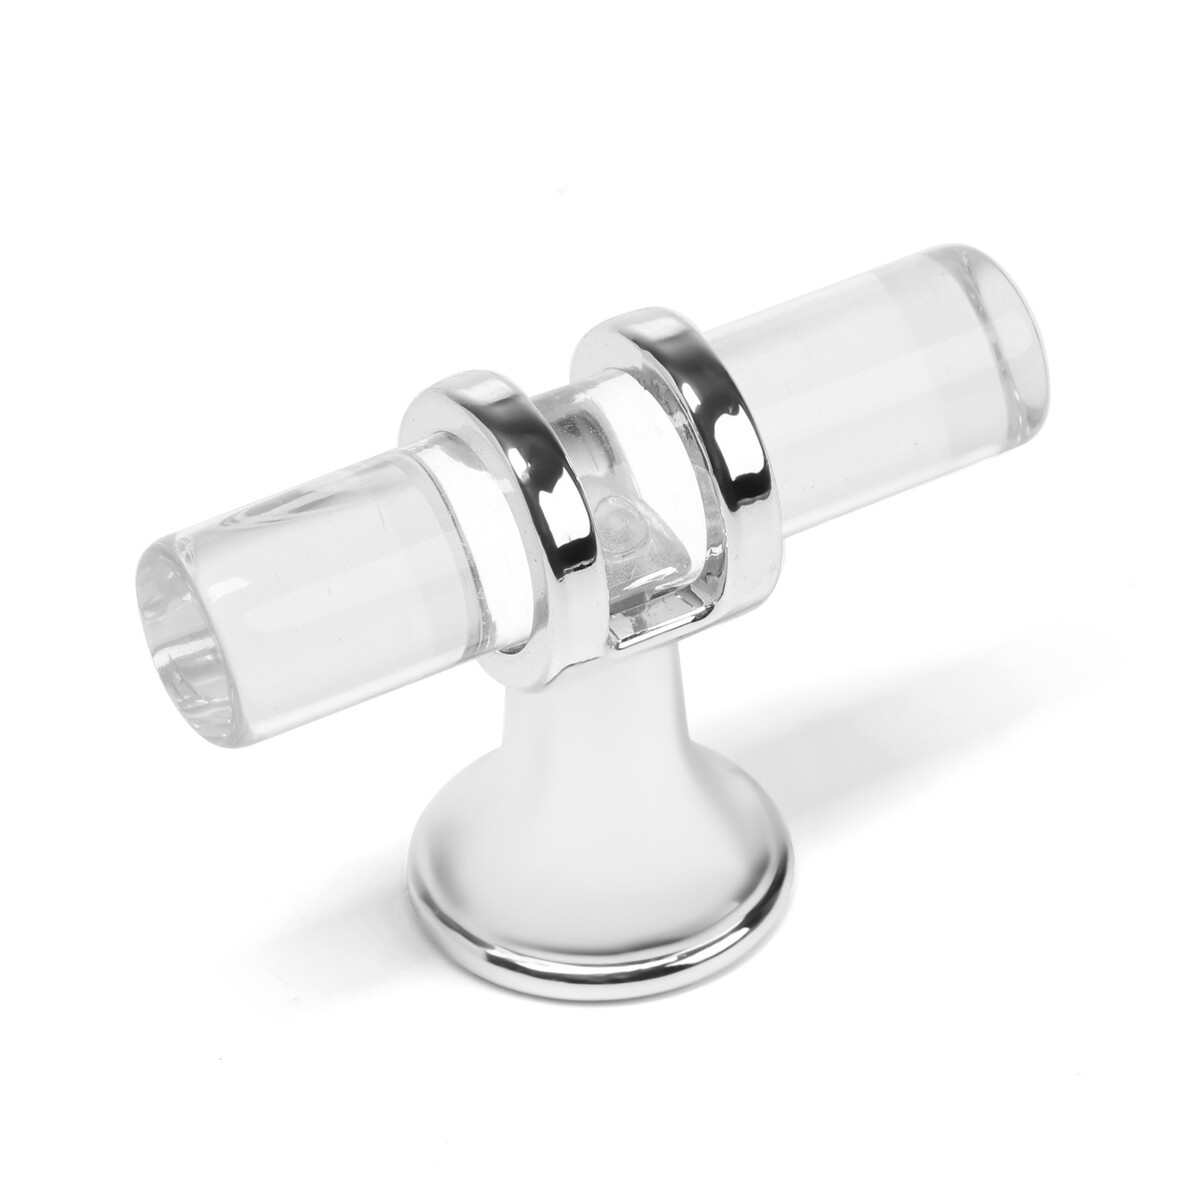 Ручка кнопка cappio pk106, d=12 мм, пластик, цвет прозрачный/хром аэратор zein регулировка потока вентилятор пластик сетка нерж прозрачный хром